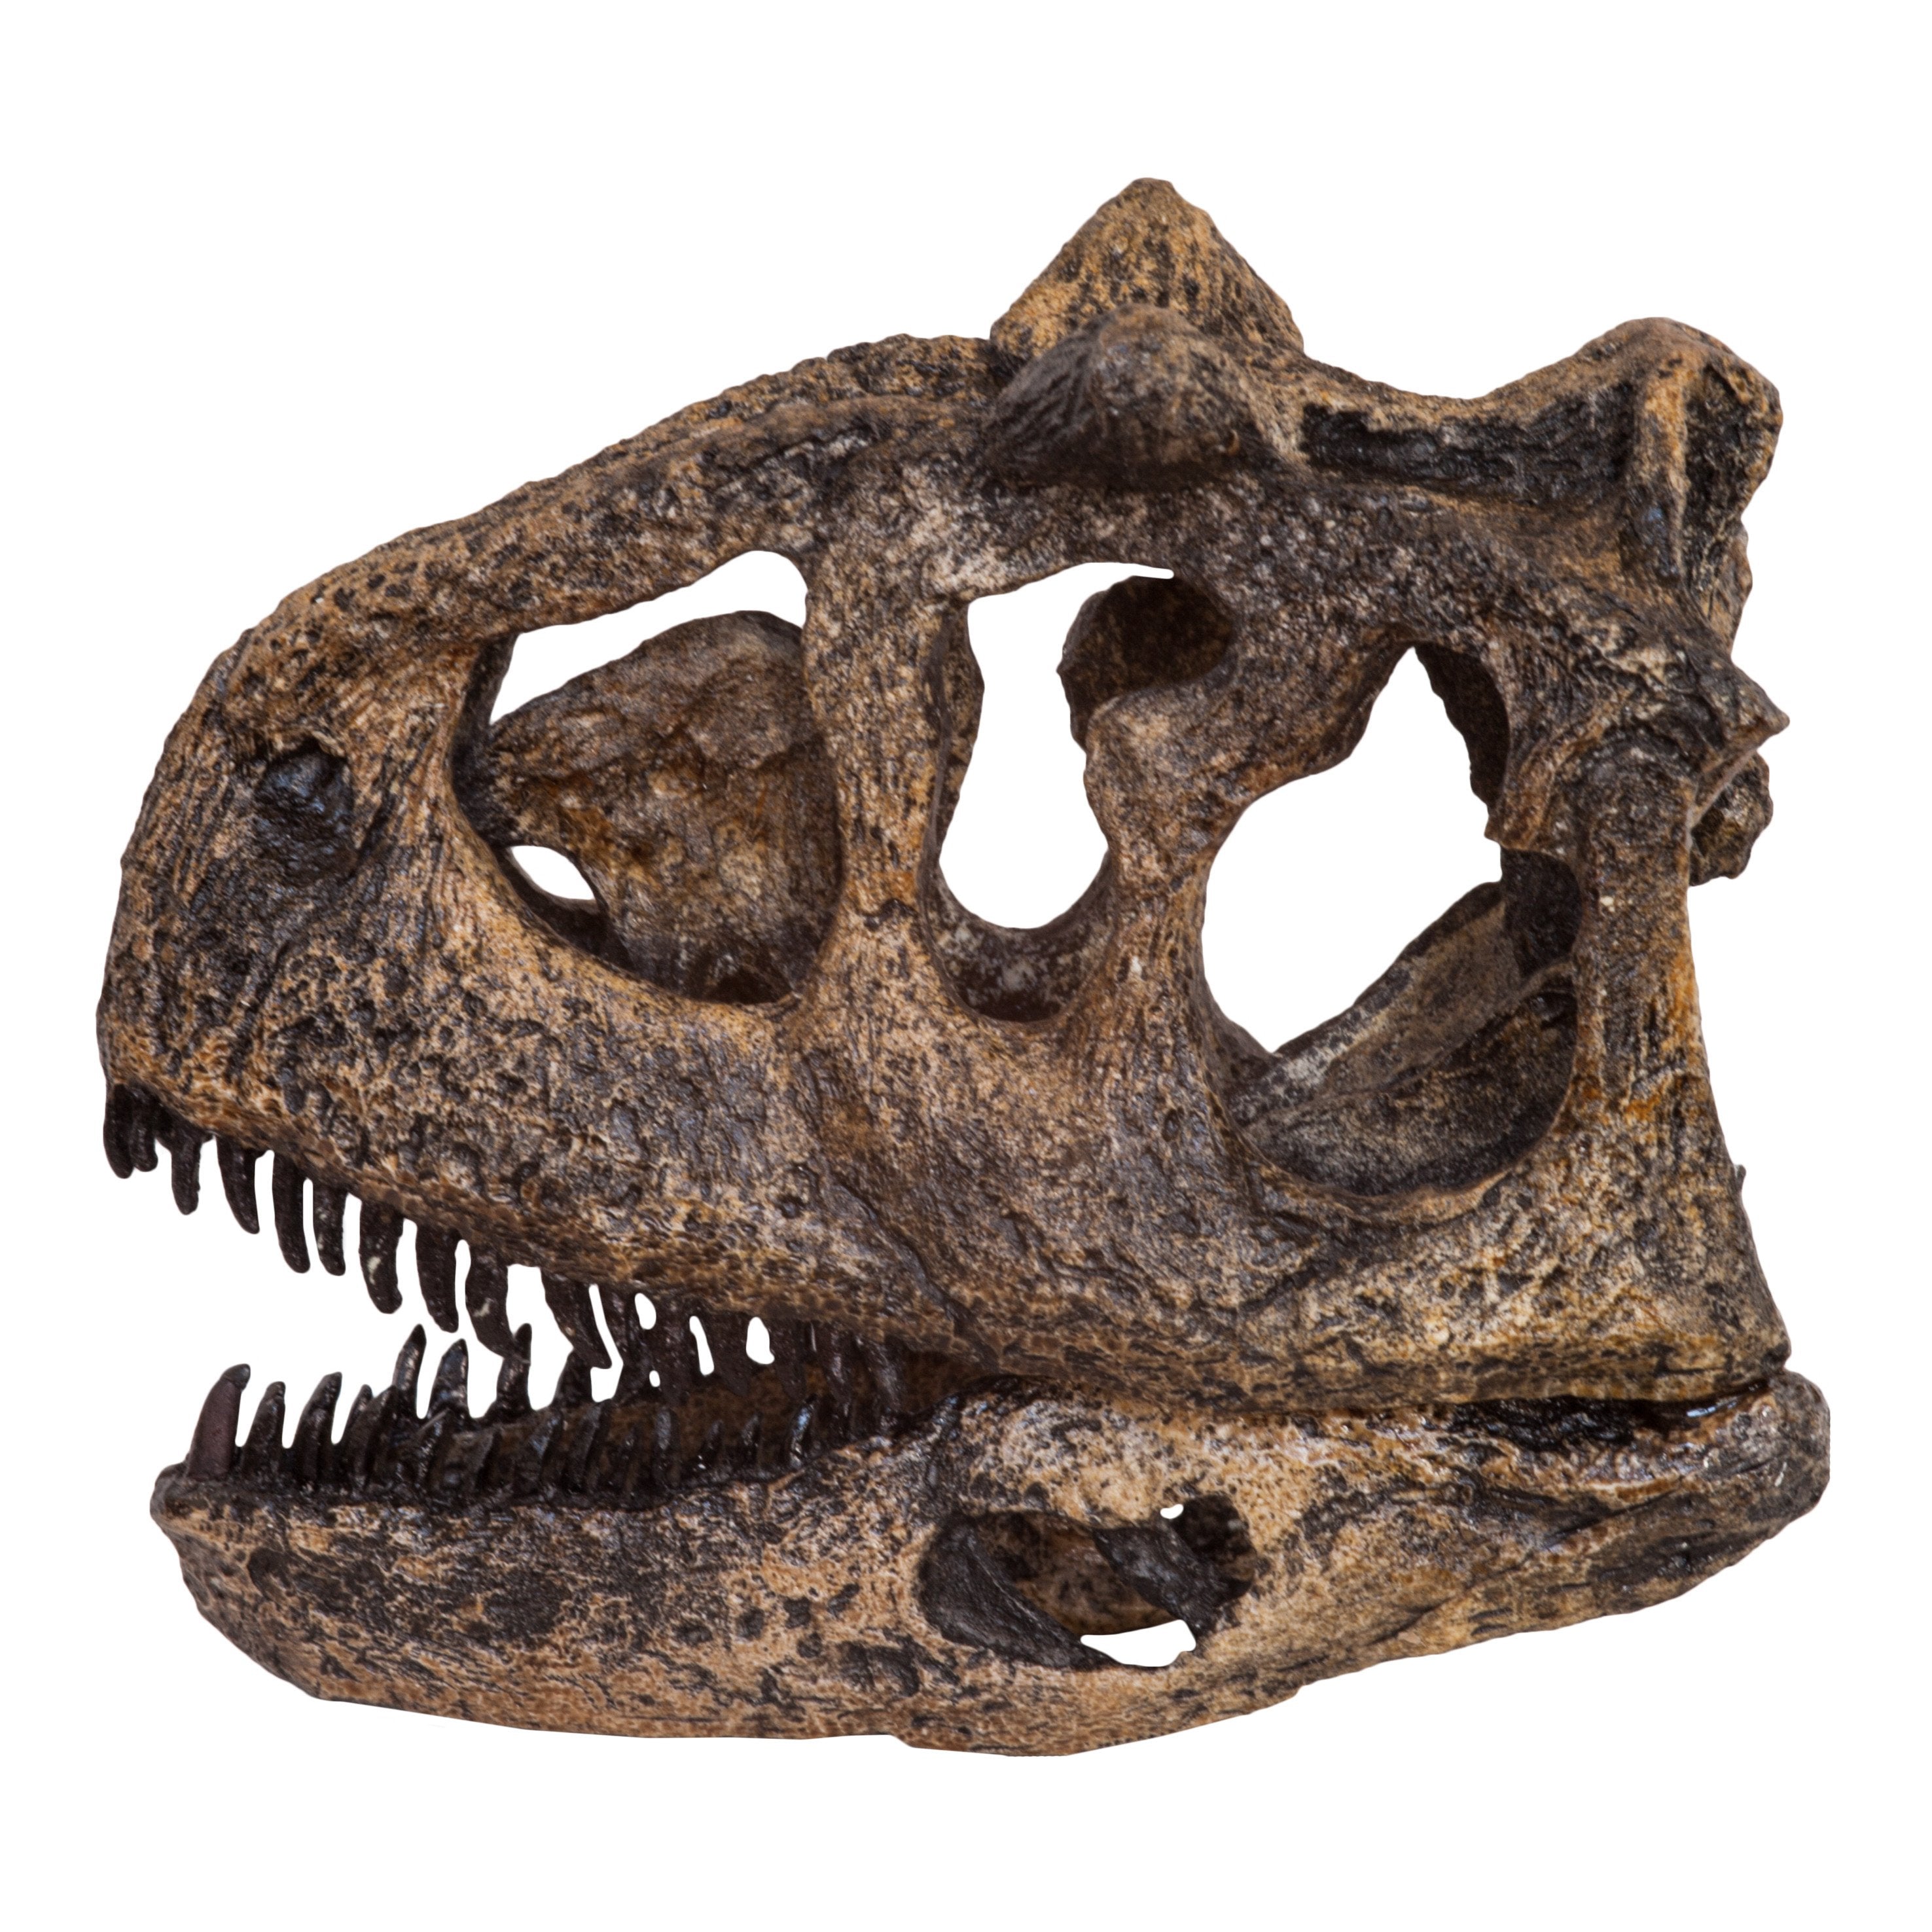 Replica Carnotaurus Dinosaur Skull For Sale – Skulls Unlimited  International, Inc.